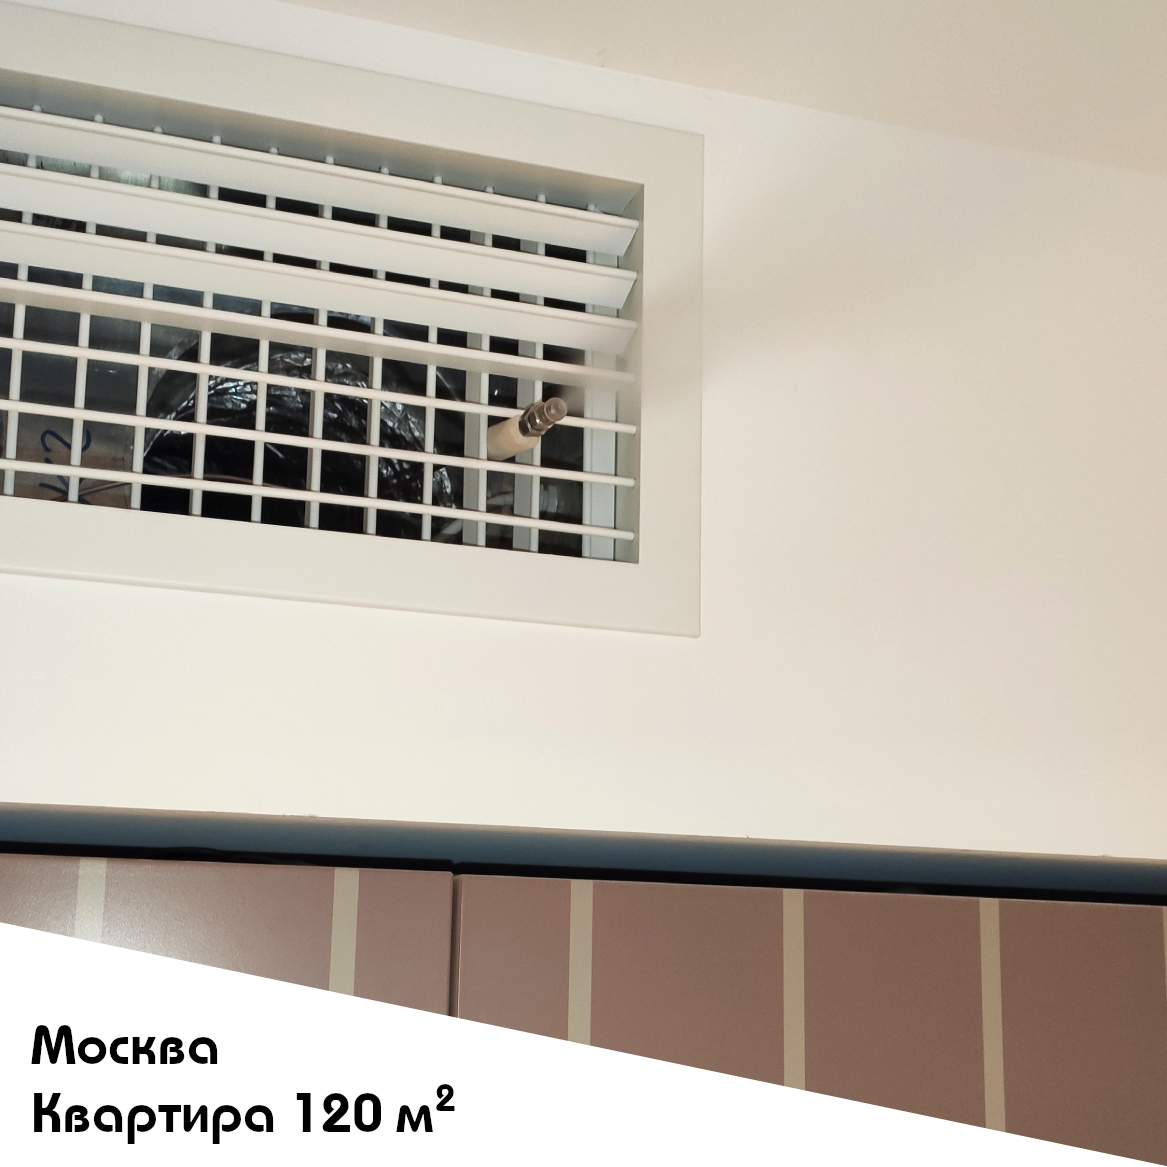 Выполненный объект. Система увлажнения для квартиры 120 м2 в Москве